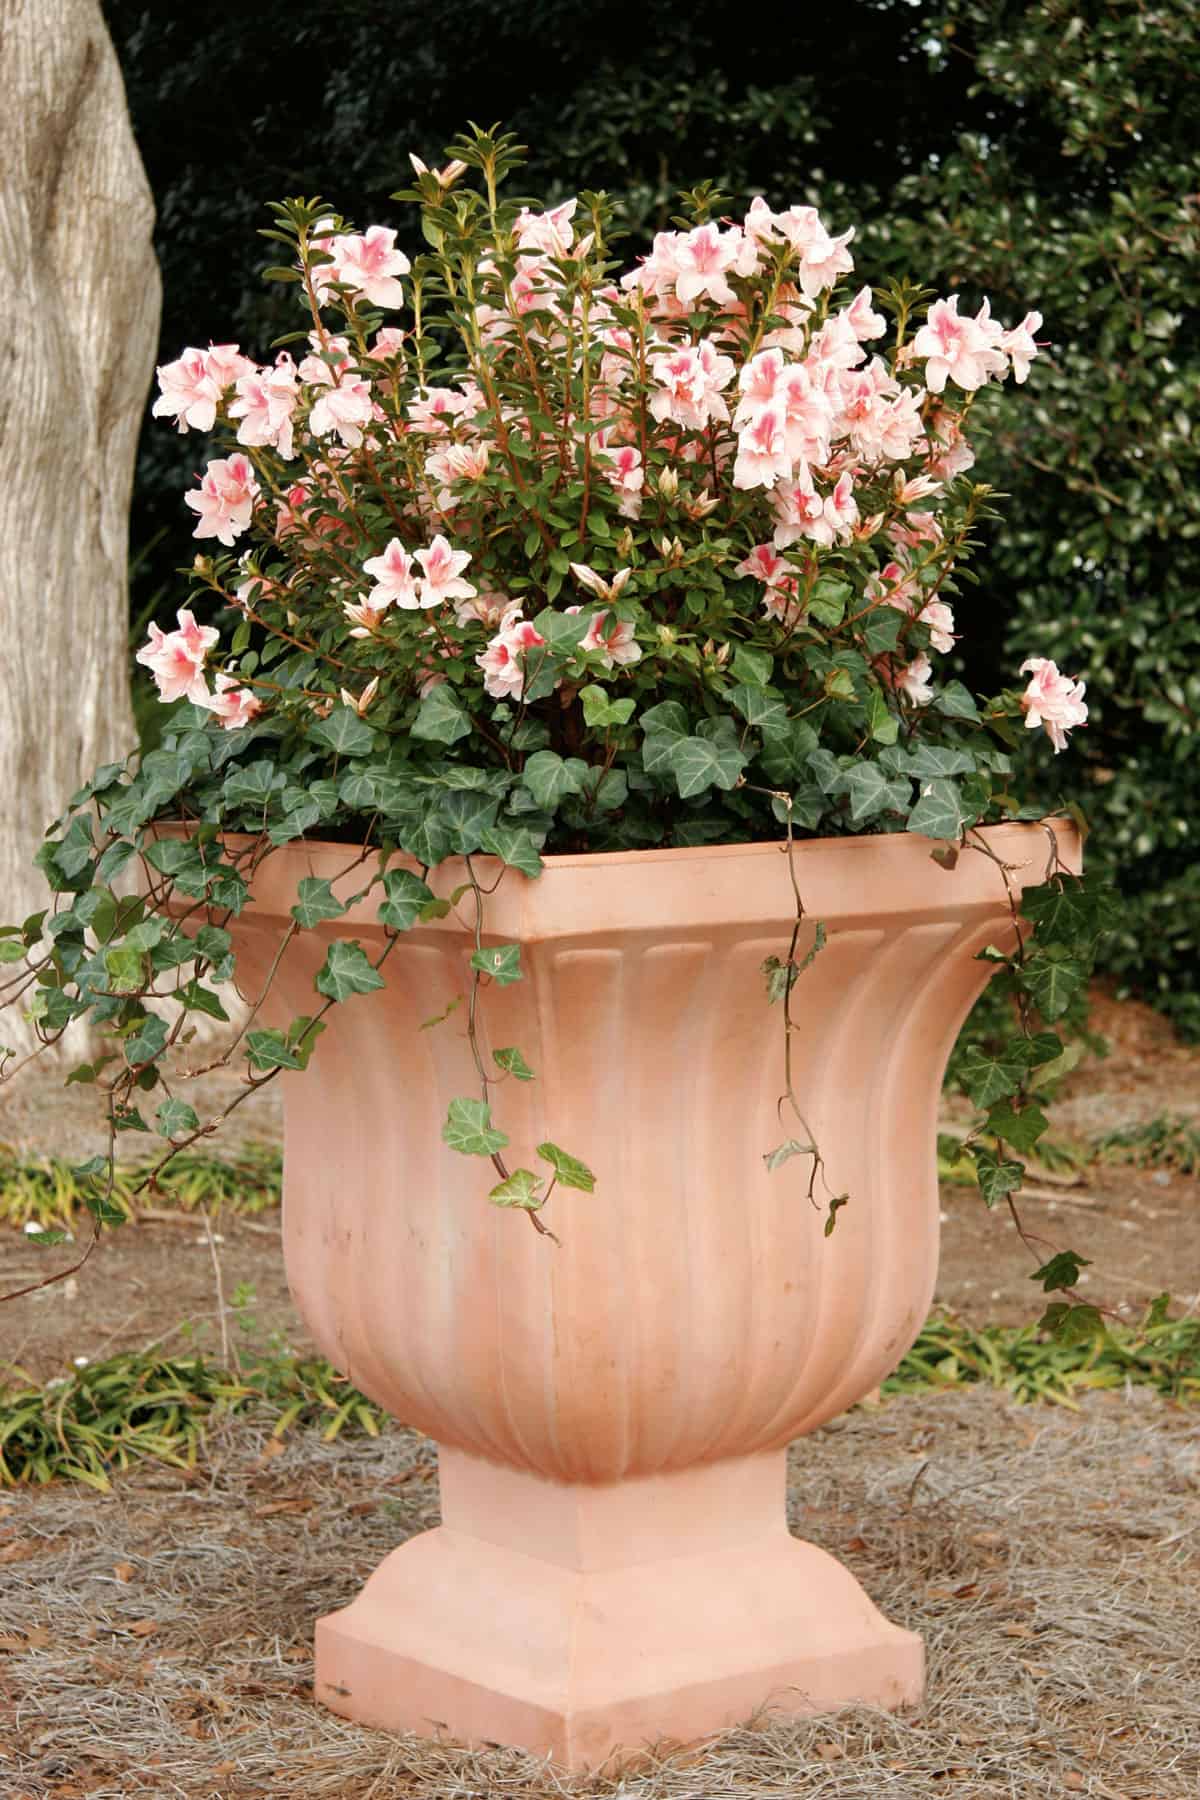 Encore Azalea Chiffon decorative container planting